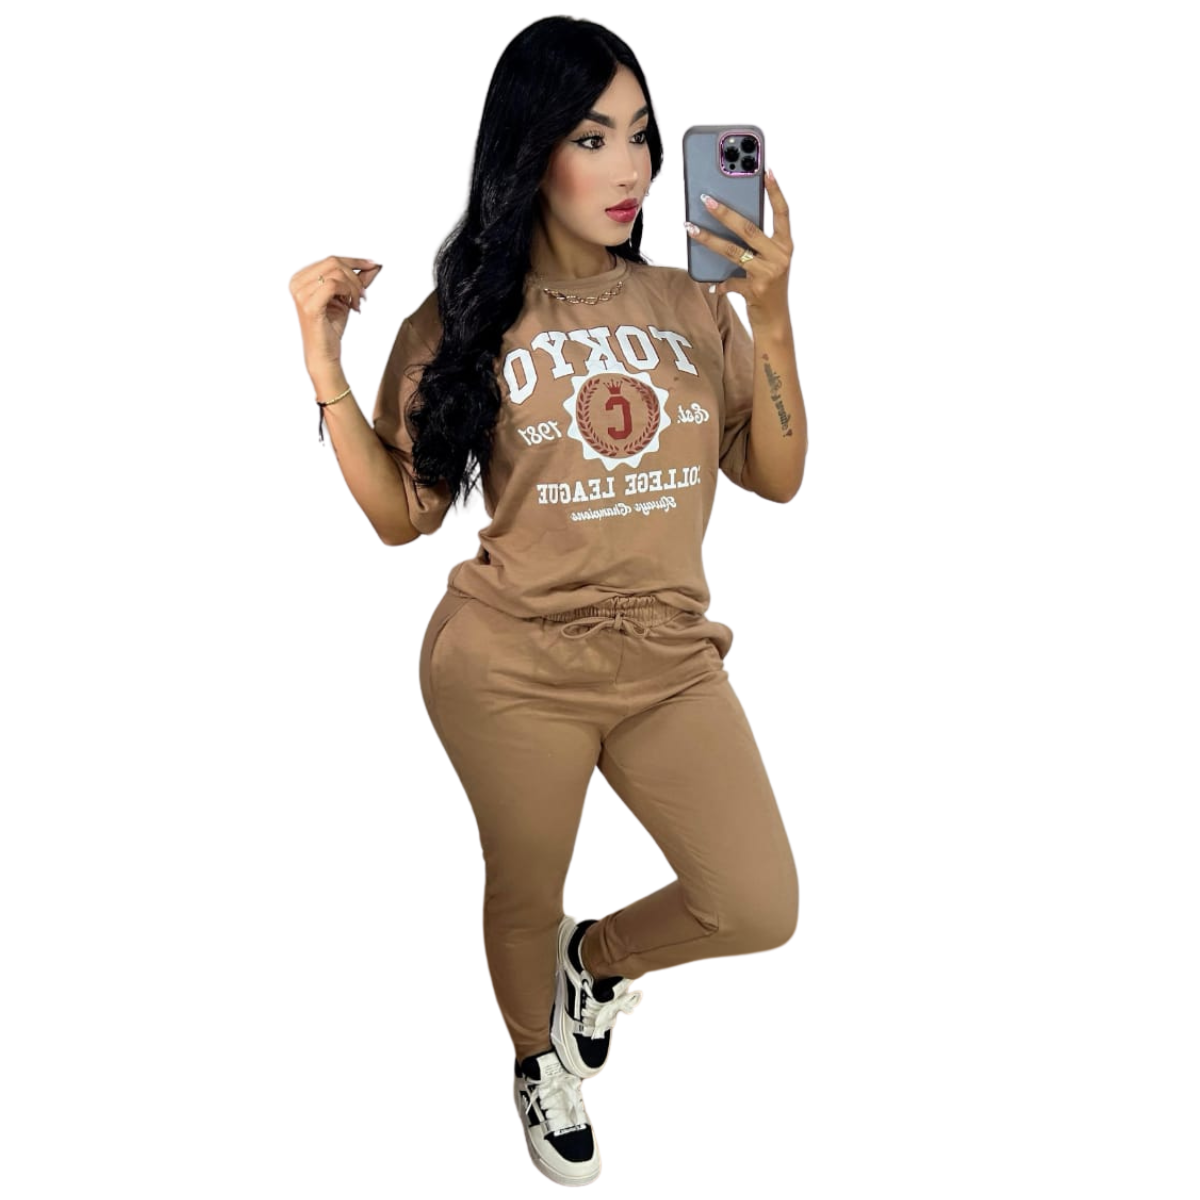 conjunto deportivo mujer blusa oversize (talla única) comprar en onlineshoppingcenterg Colombia centro de compras en linea